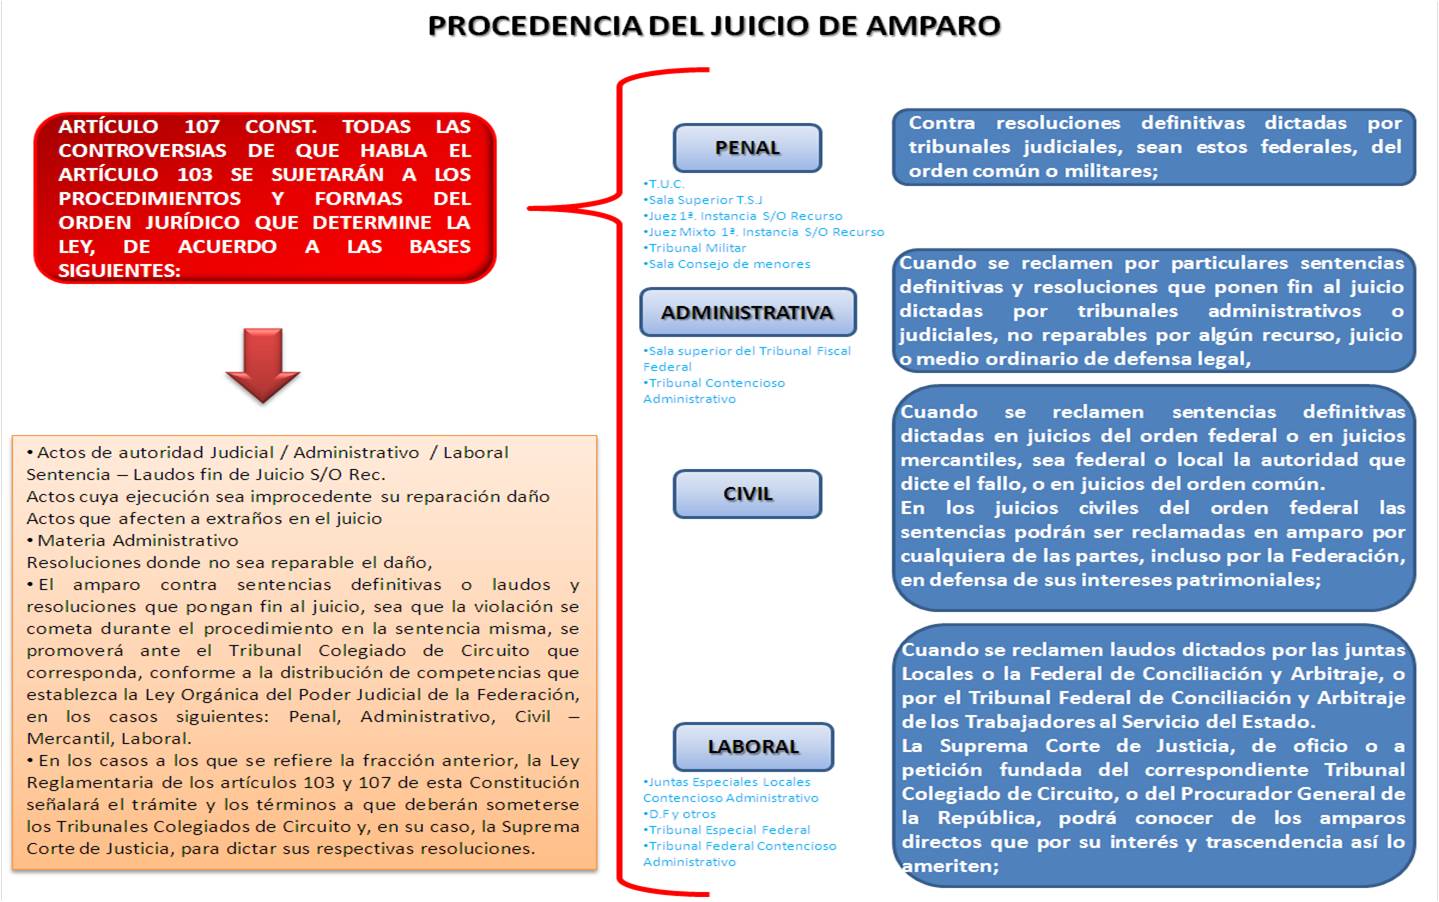 derecho_amparo PROCEDENCIA EN EL JUICIO DE AMPARO